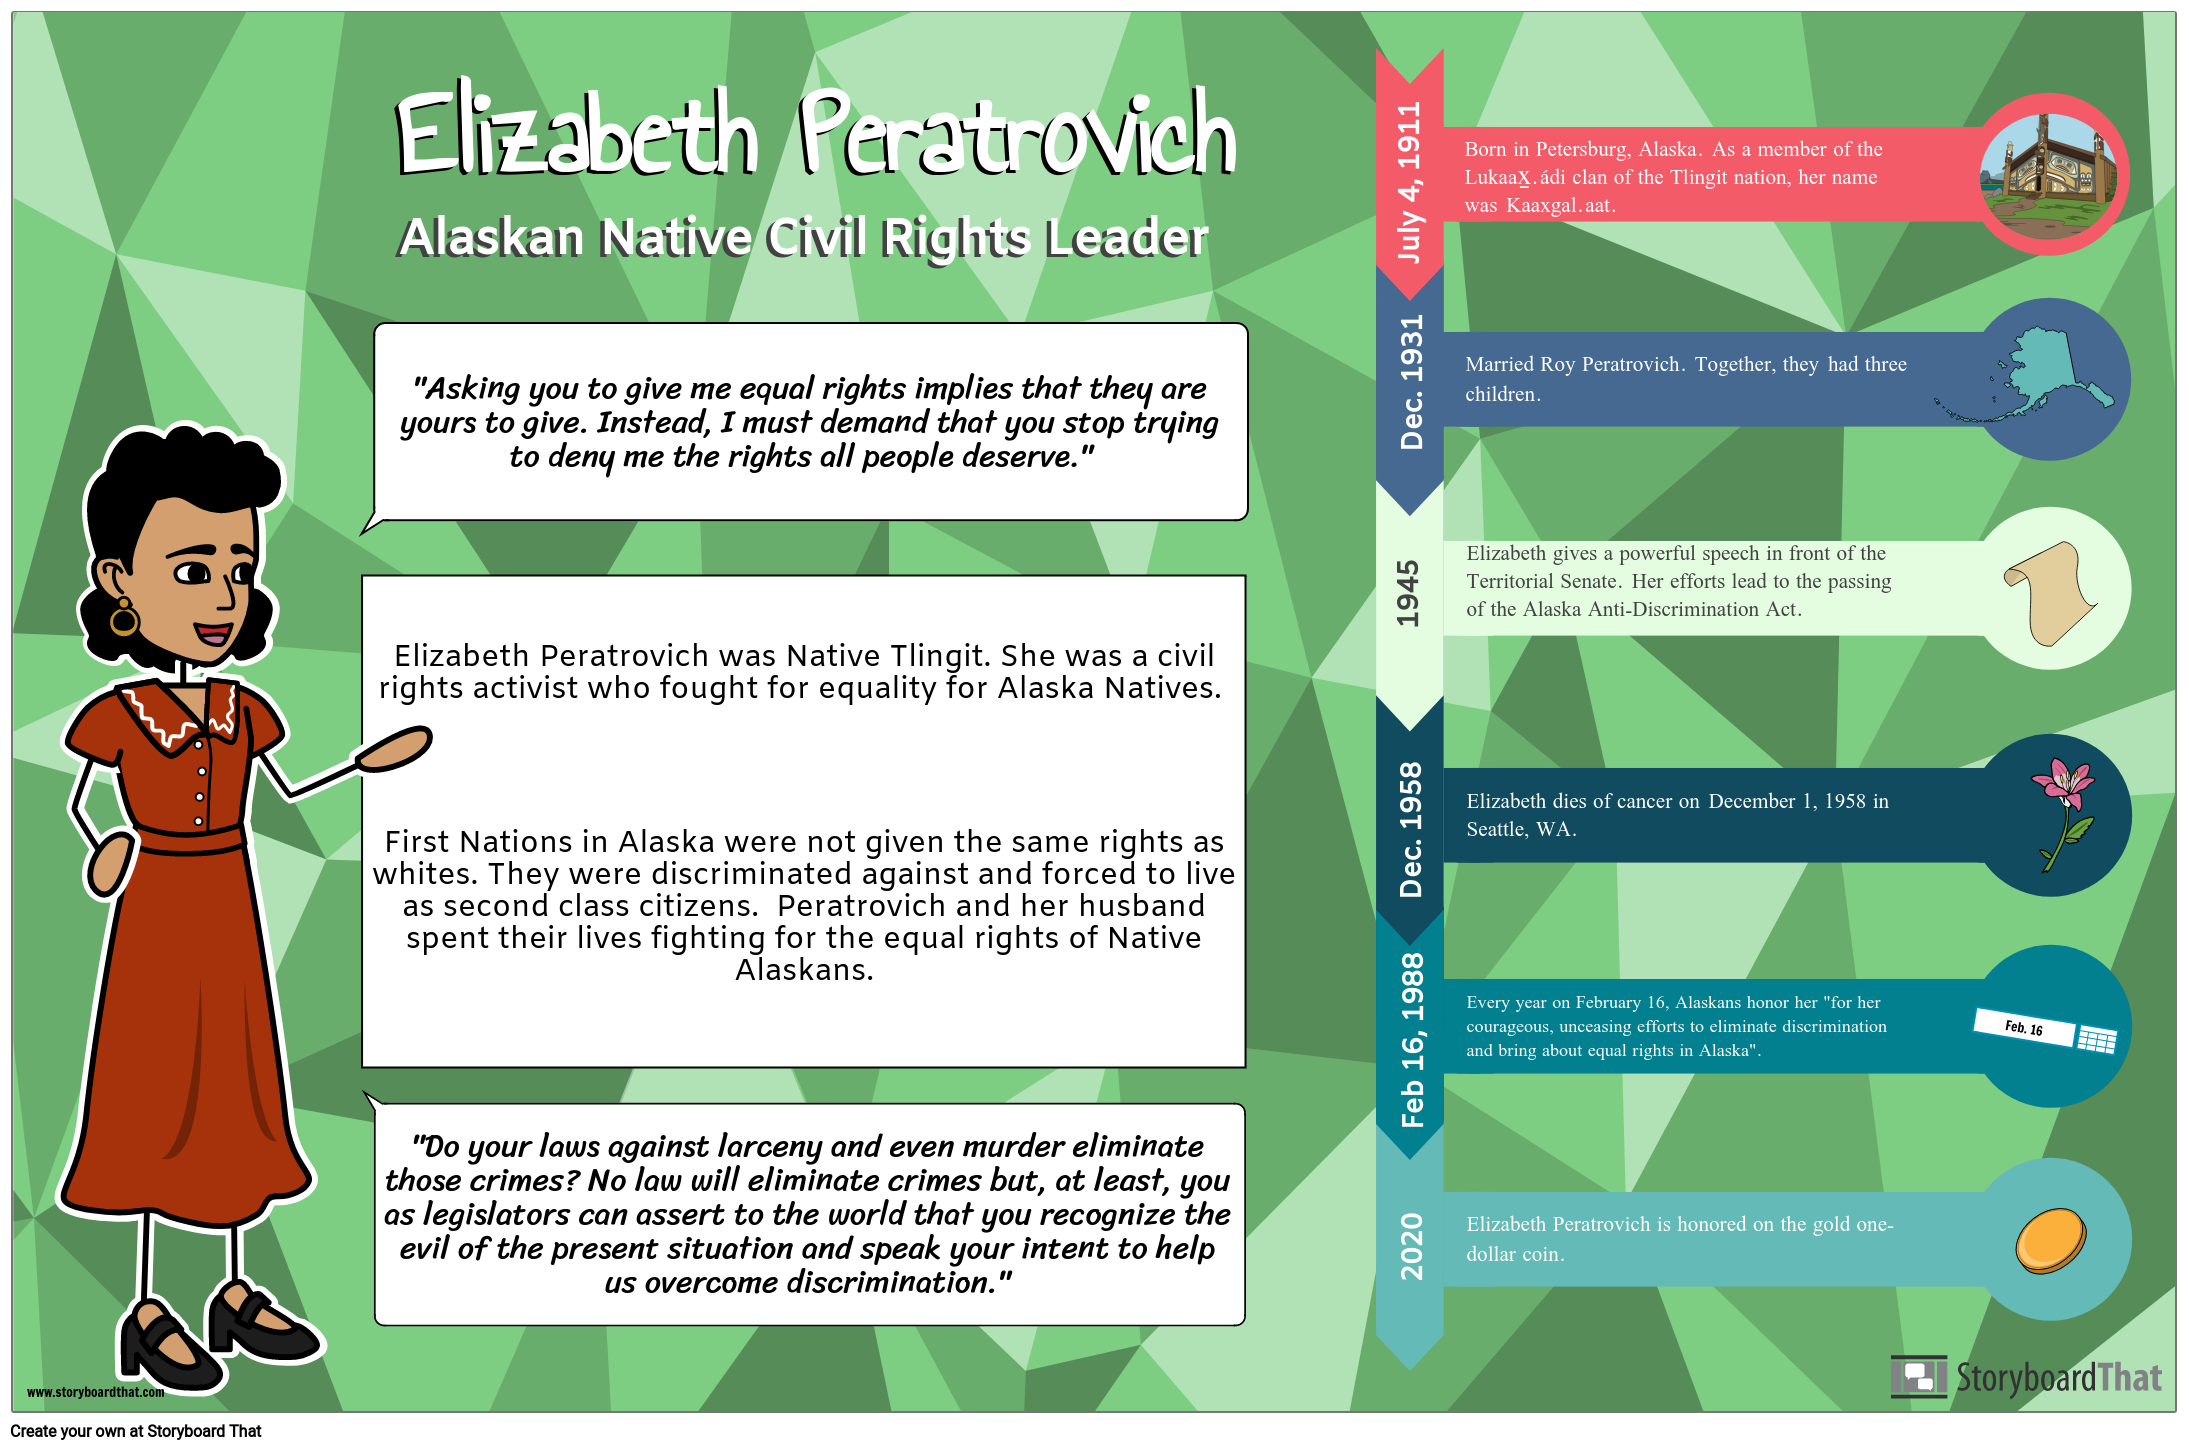 Elizabeth Peratrovich Biography